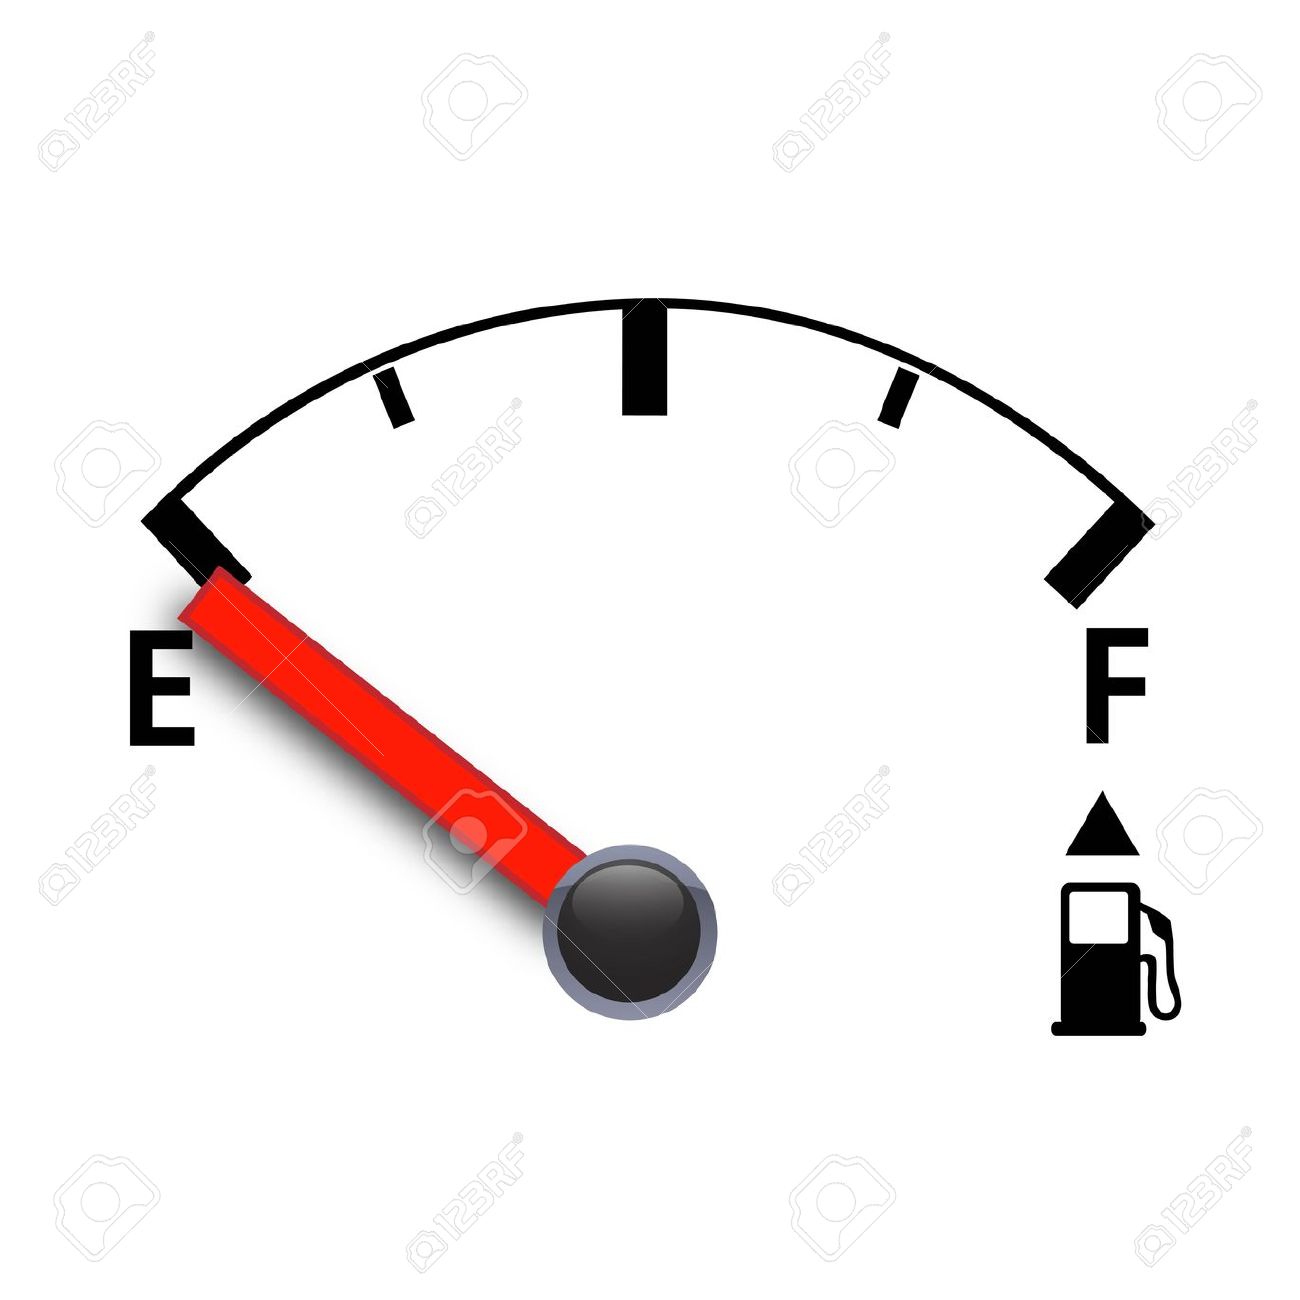 empty, fuel, full, gas, gas g